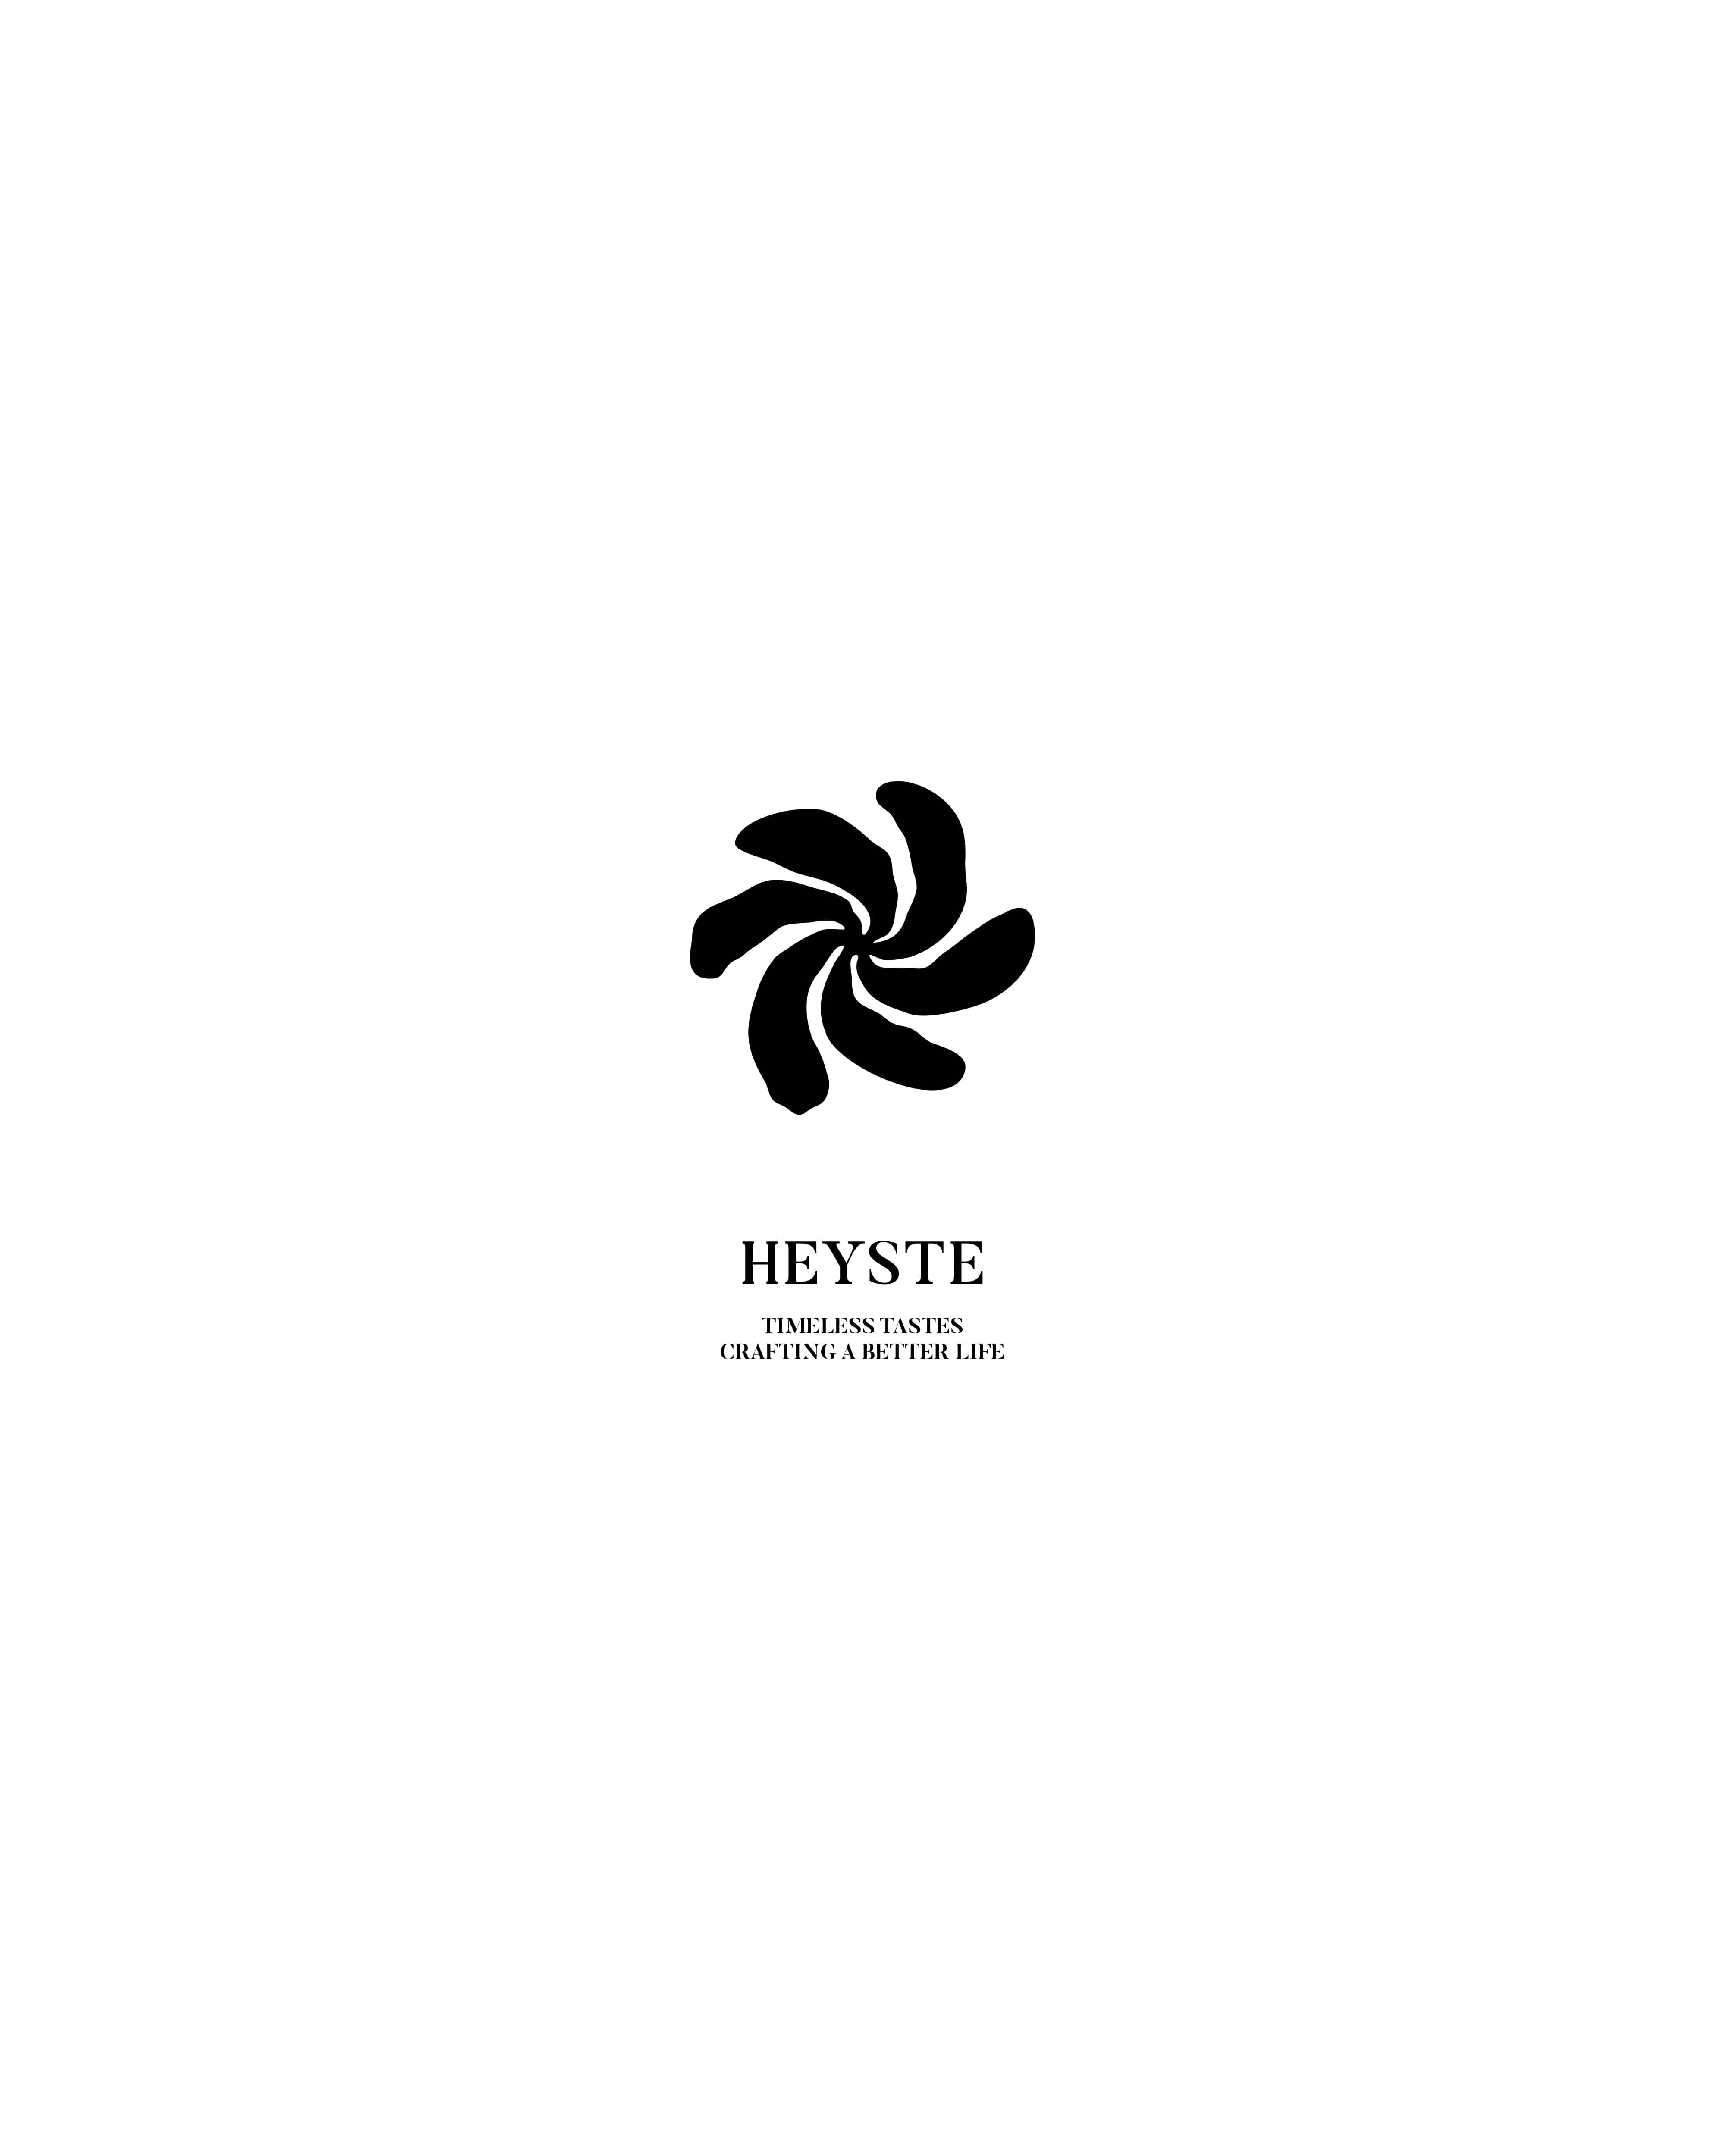 New Logo / Heyste 24.02.15